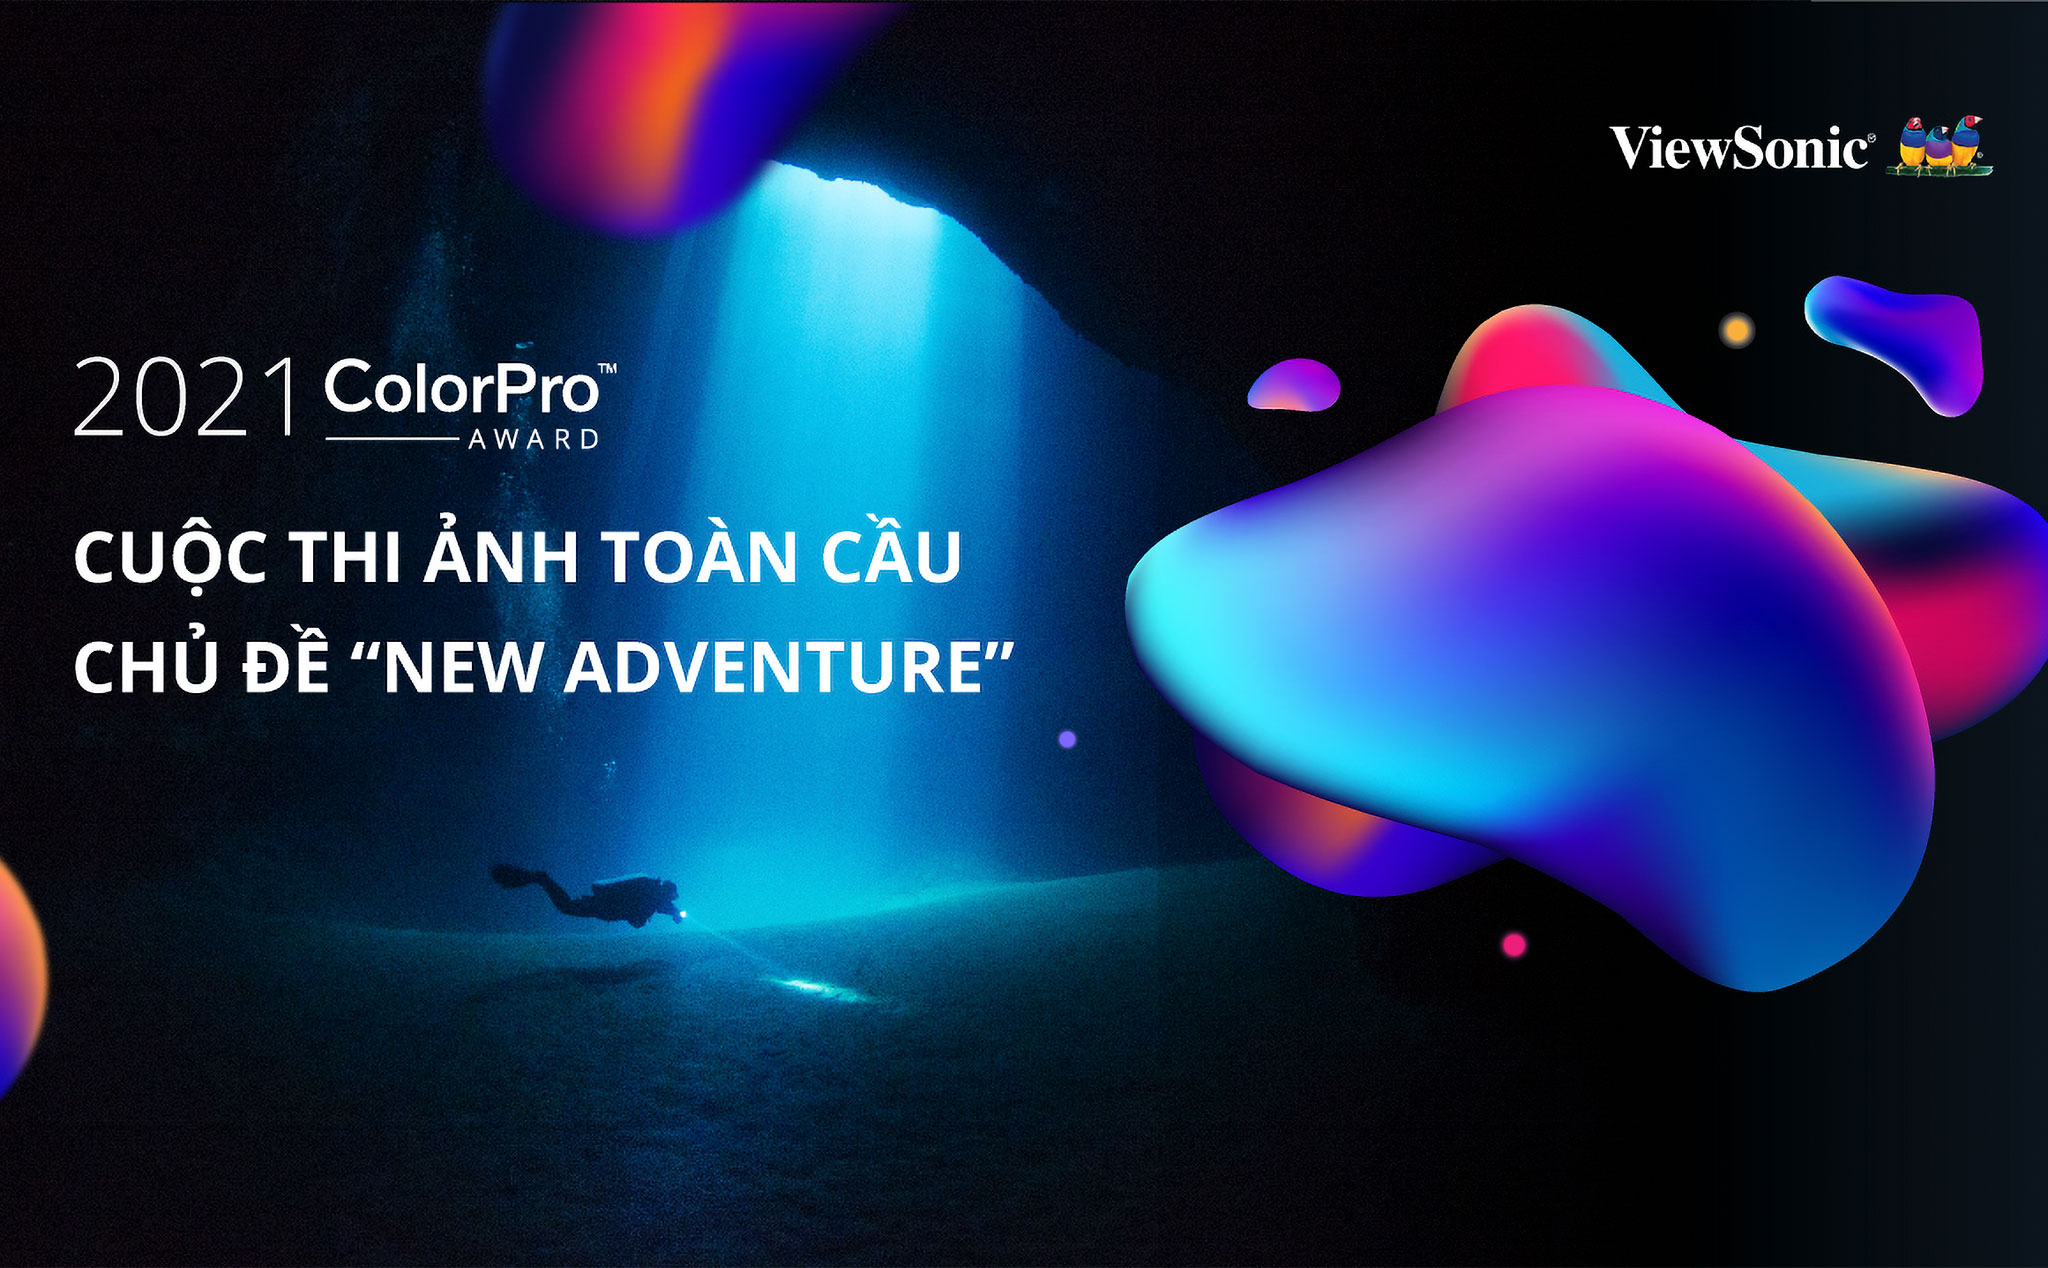 ViewSonic công bố cuộc thi ảnh toàn cầu ColorPro Award 2021 chủ đề "New Adventure"